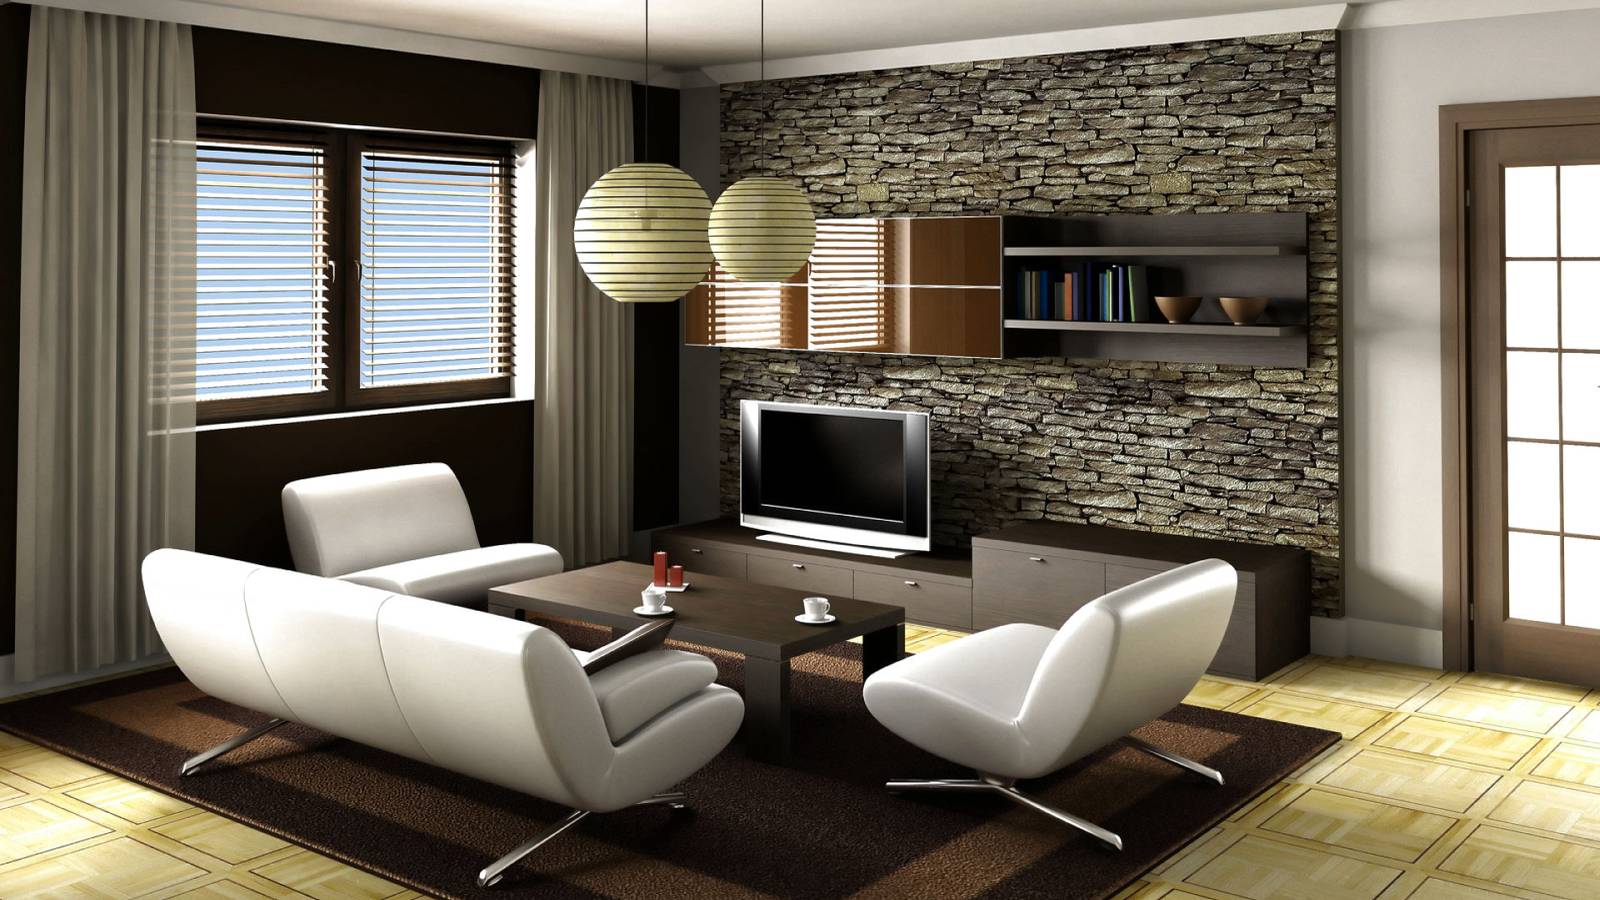 Category Living Room Interior Design Inspirations